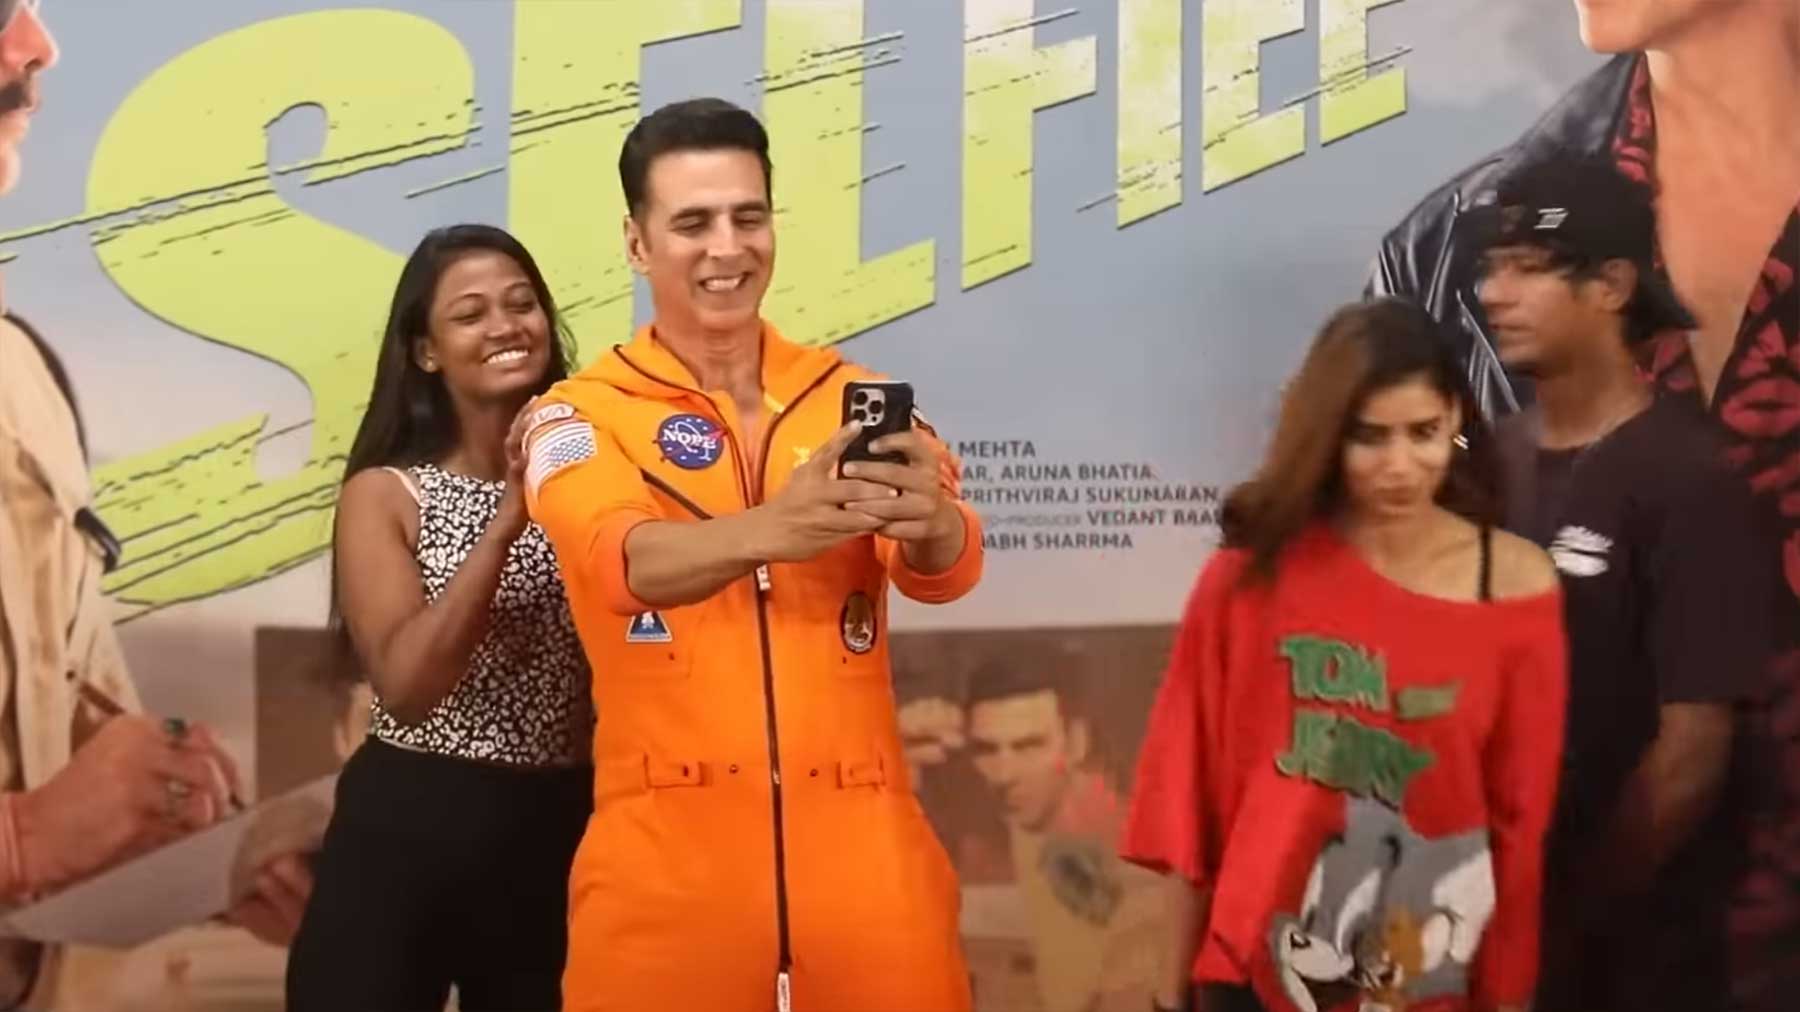 Weltrekord: 184 Selfies in 3 Minuten!